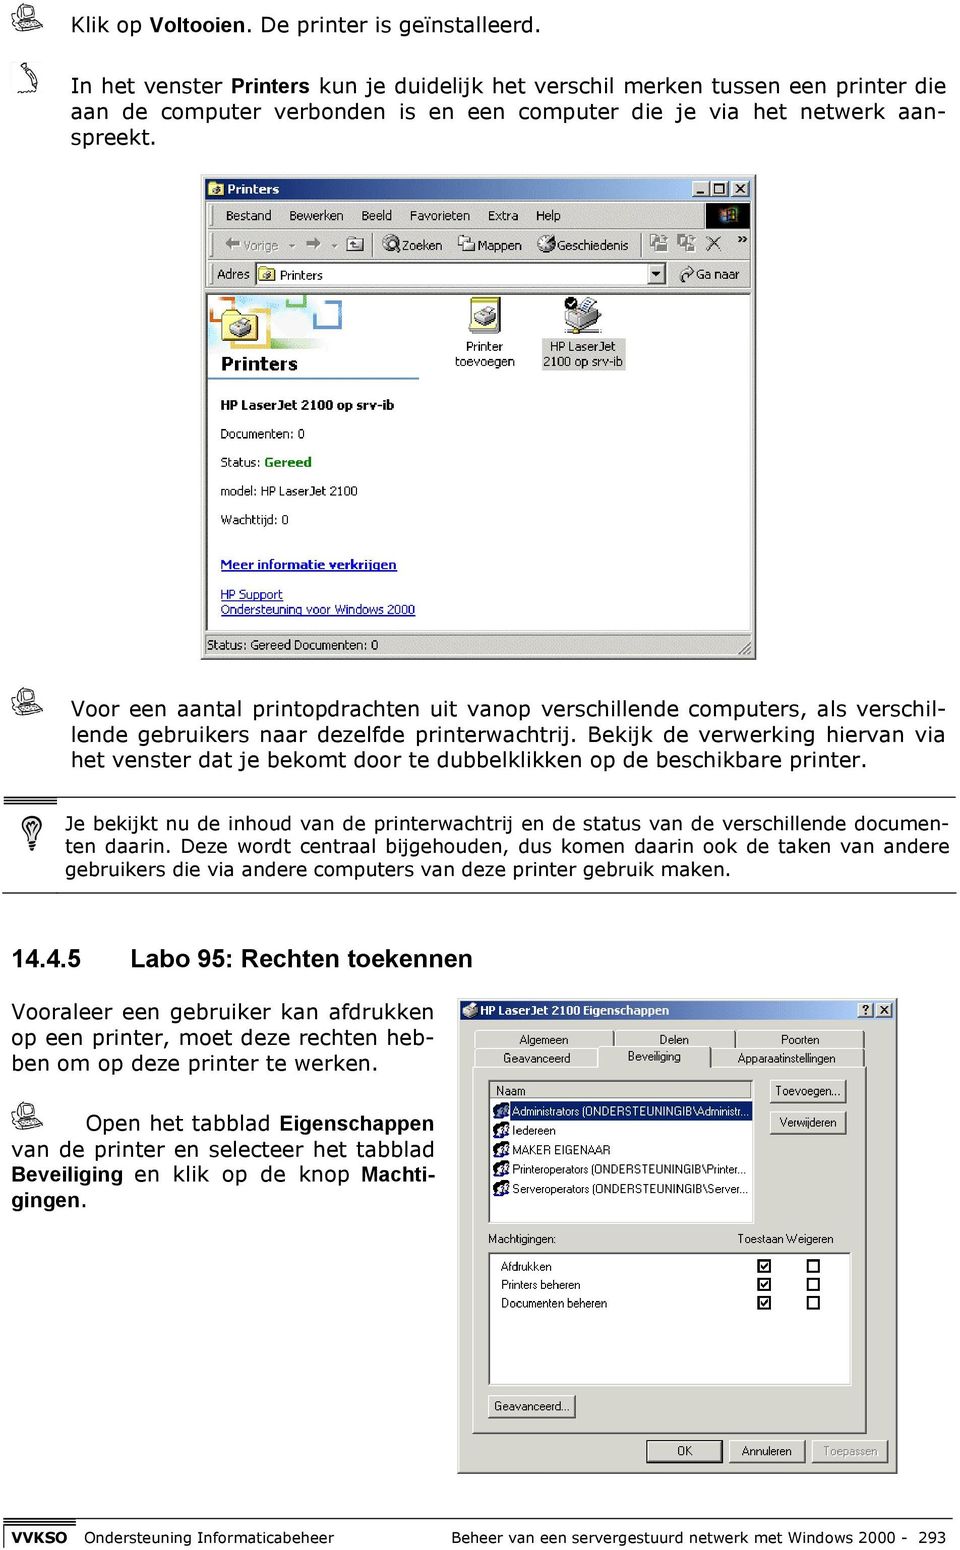 Voor een aantal printopdrachten uit vanop verschillende computers, als verschillende gebruikers naar dezelfde printerwachtrij.